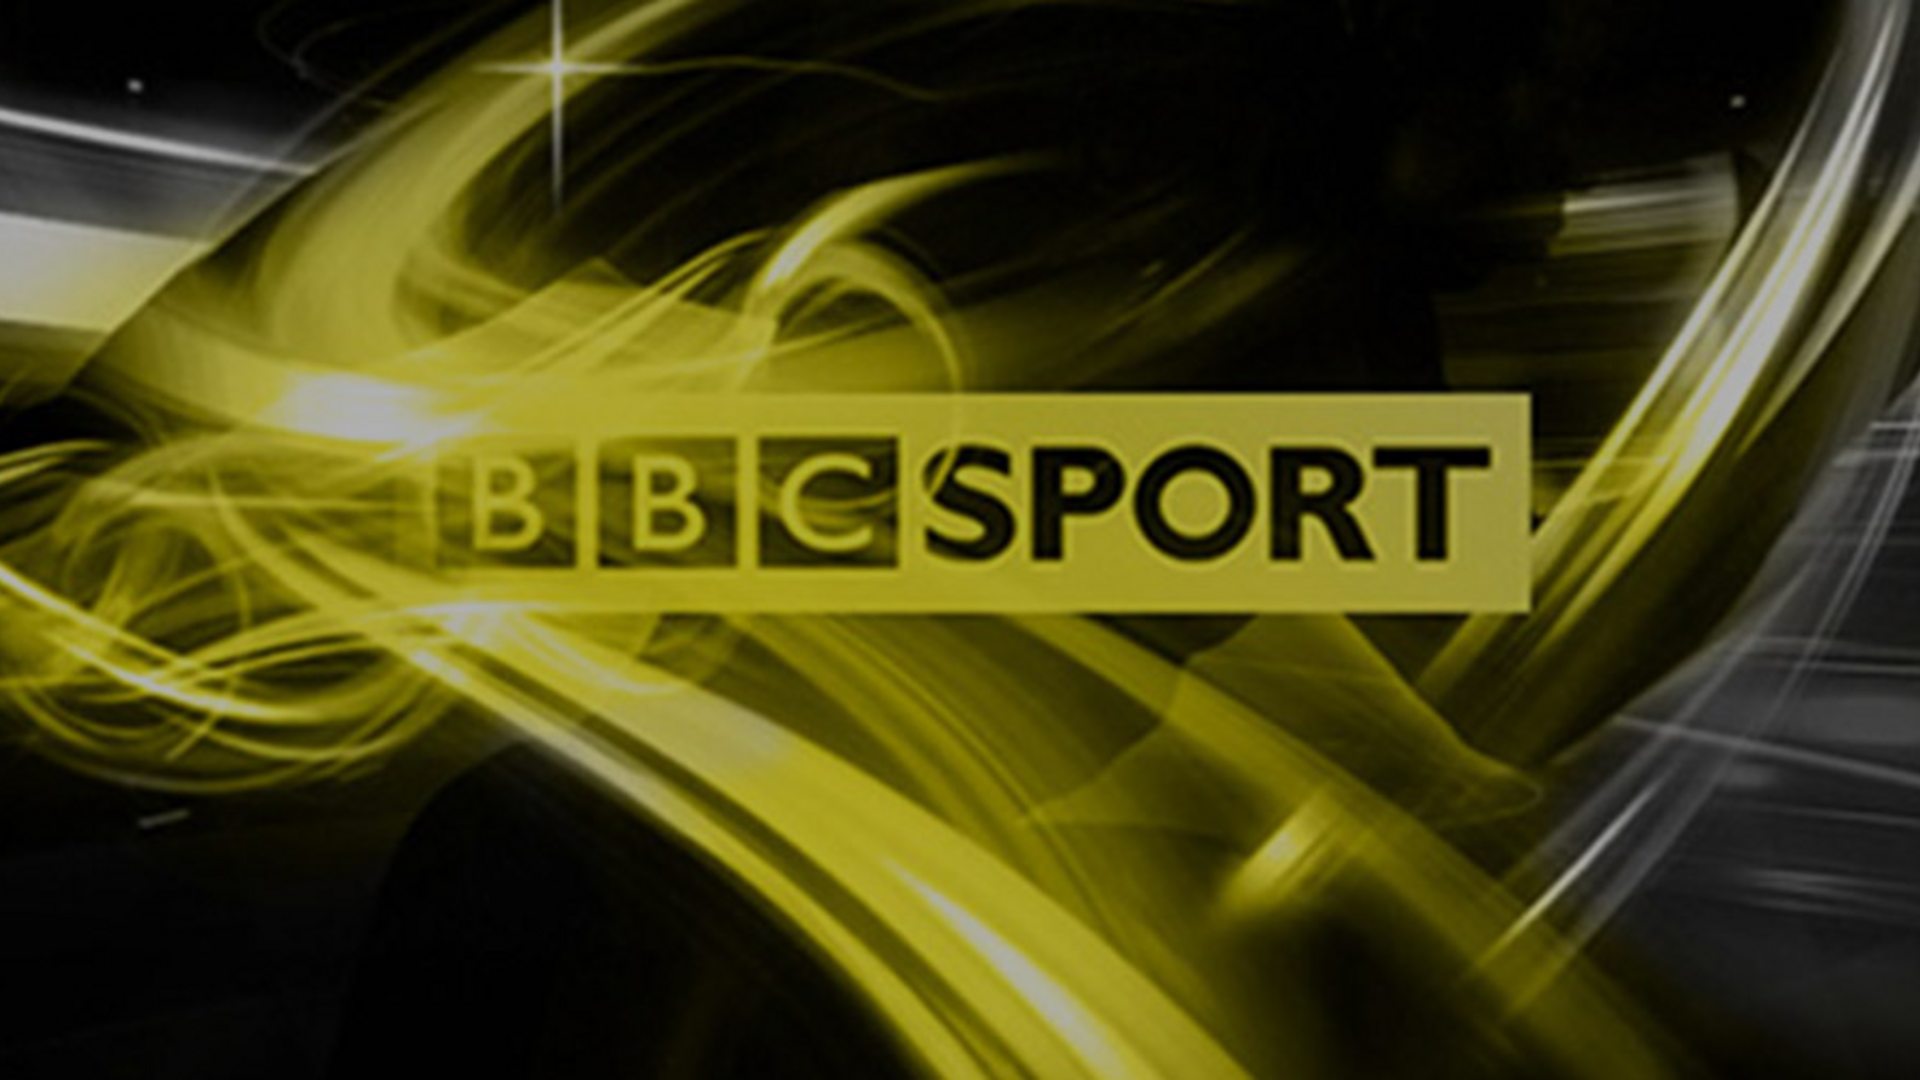 www.bbc.co.uk/sport is 20